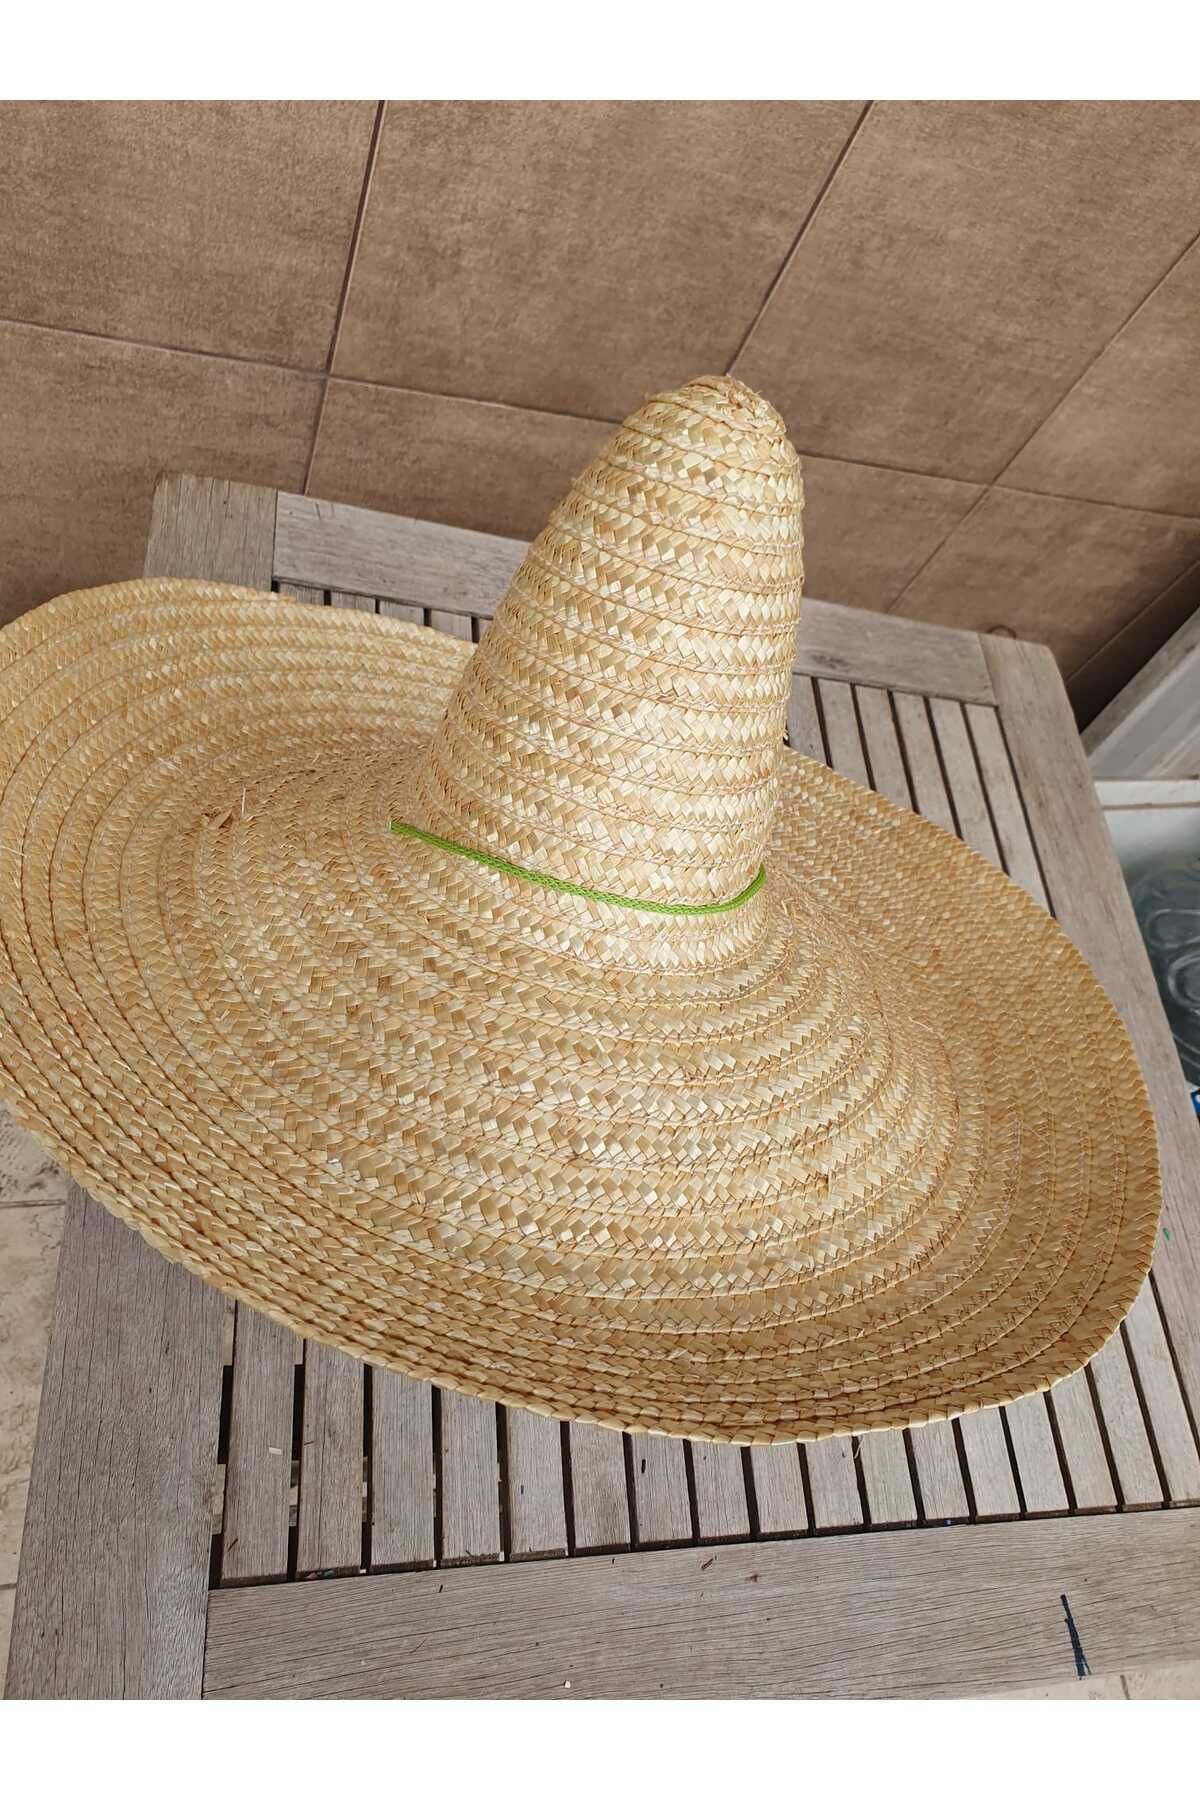 AKTEZ-EL Büyük Hasır Orijinal Meksika Şapkası 62 Cm